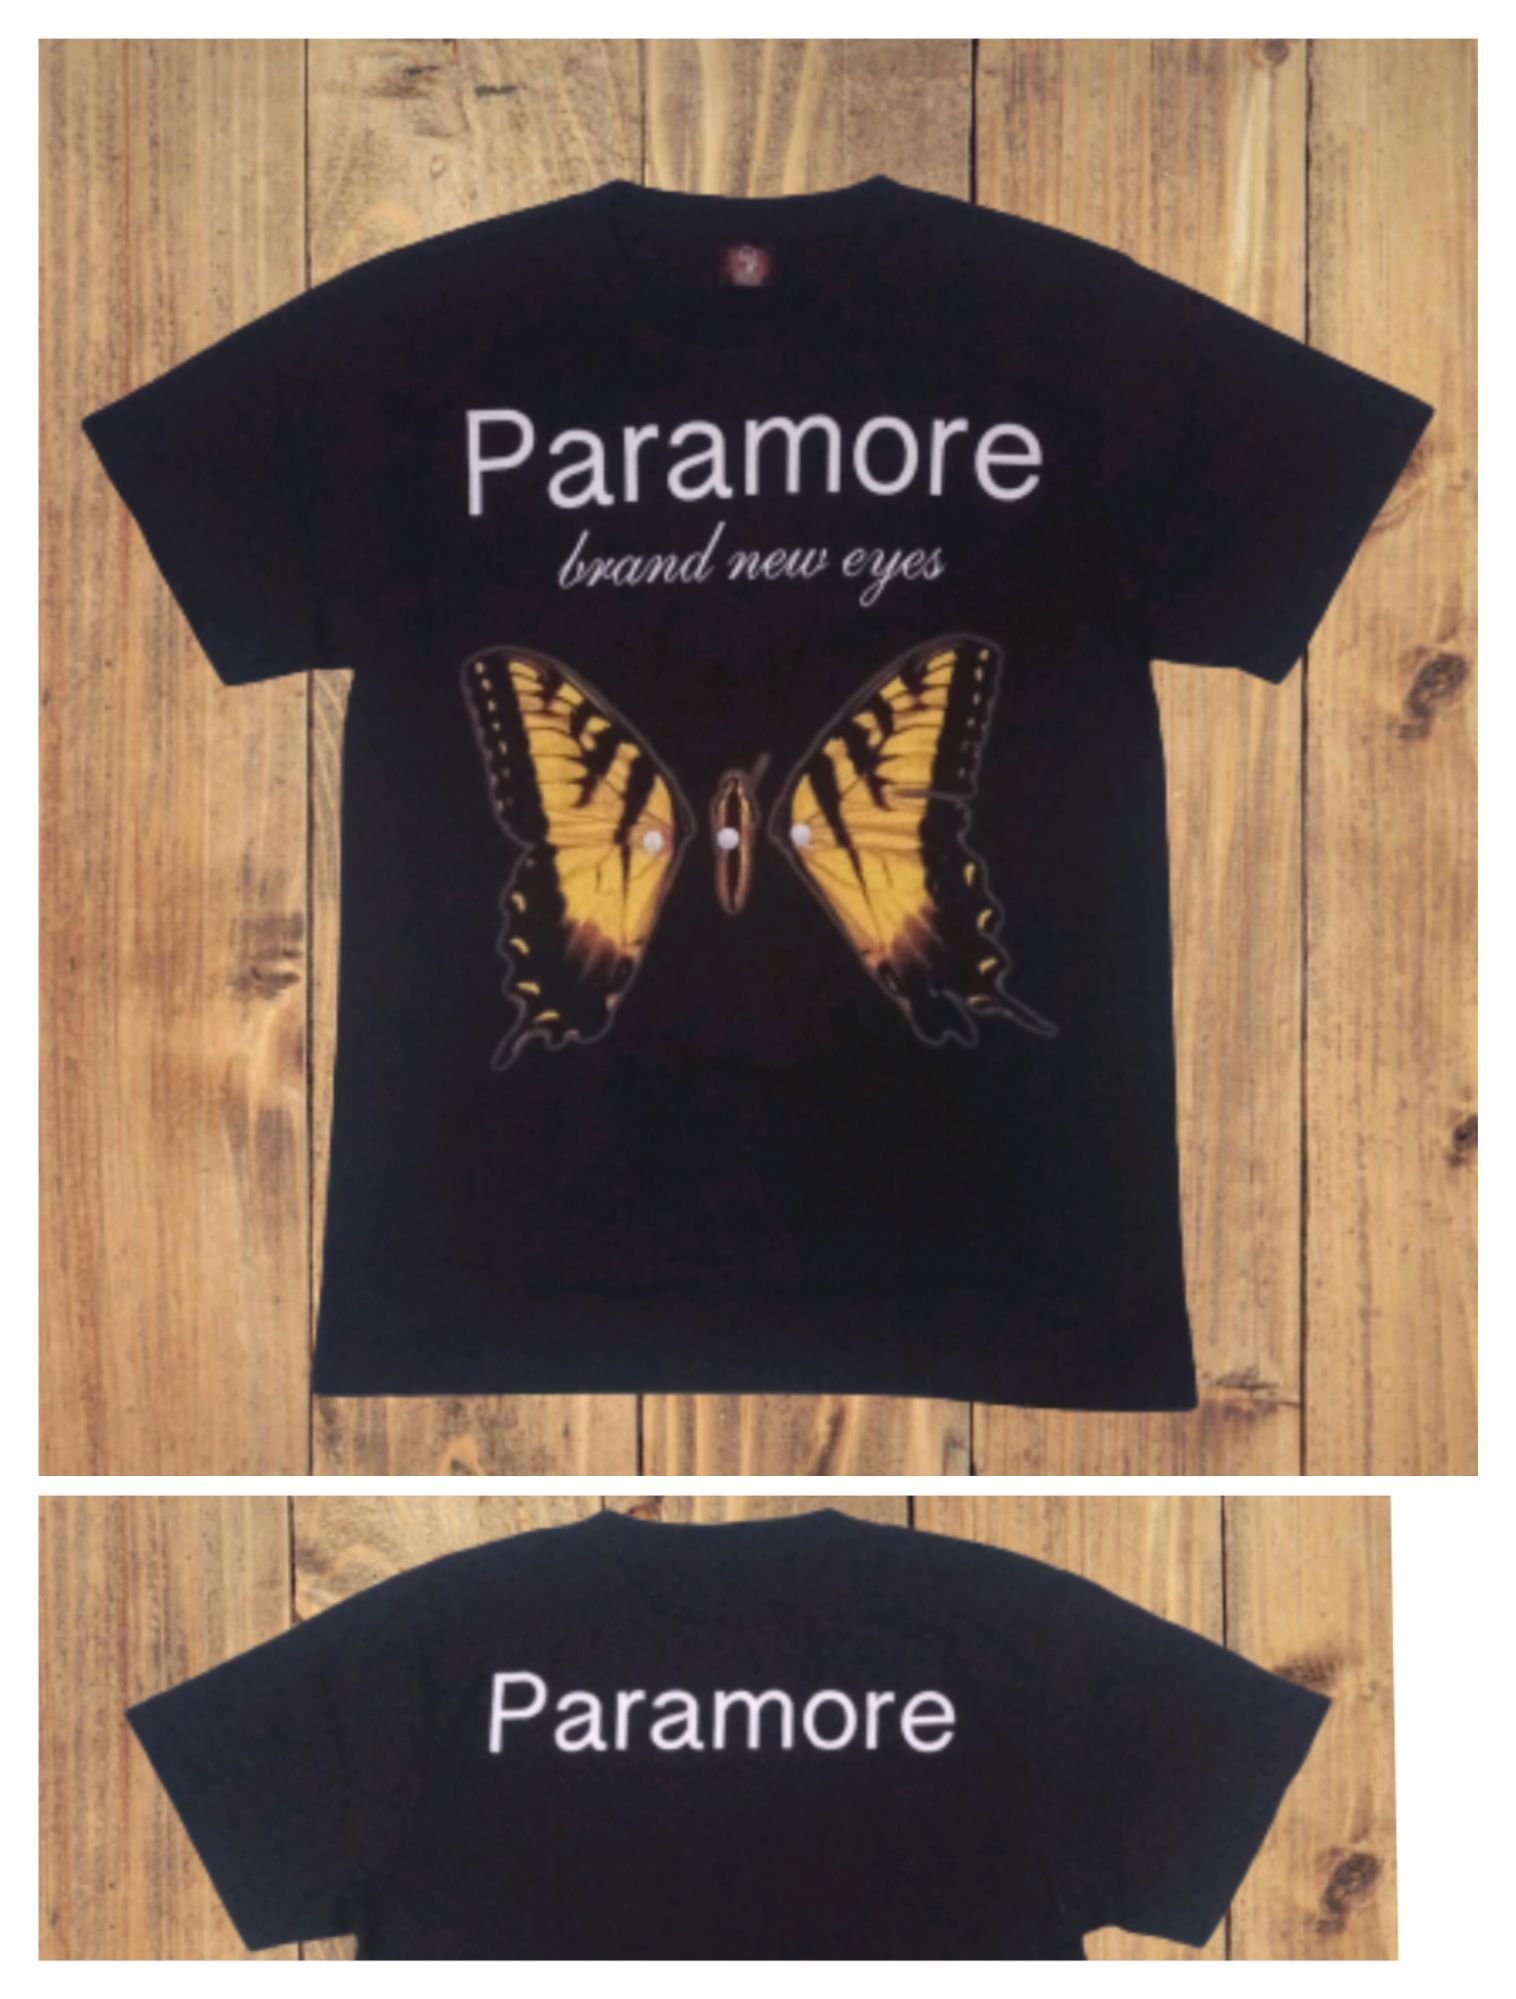 Paramore Rock Band Shirt (Brand New Eyes)